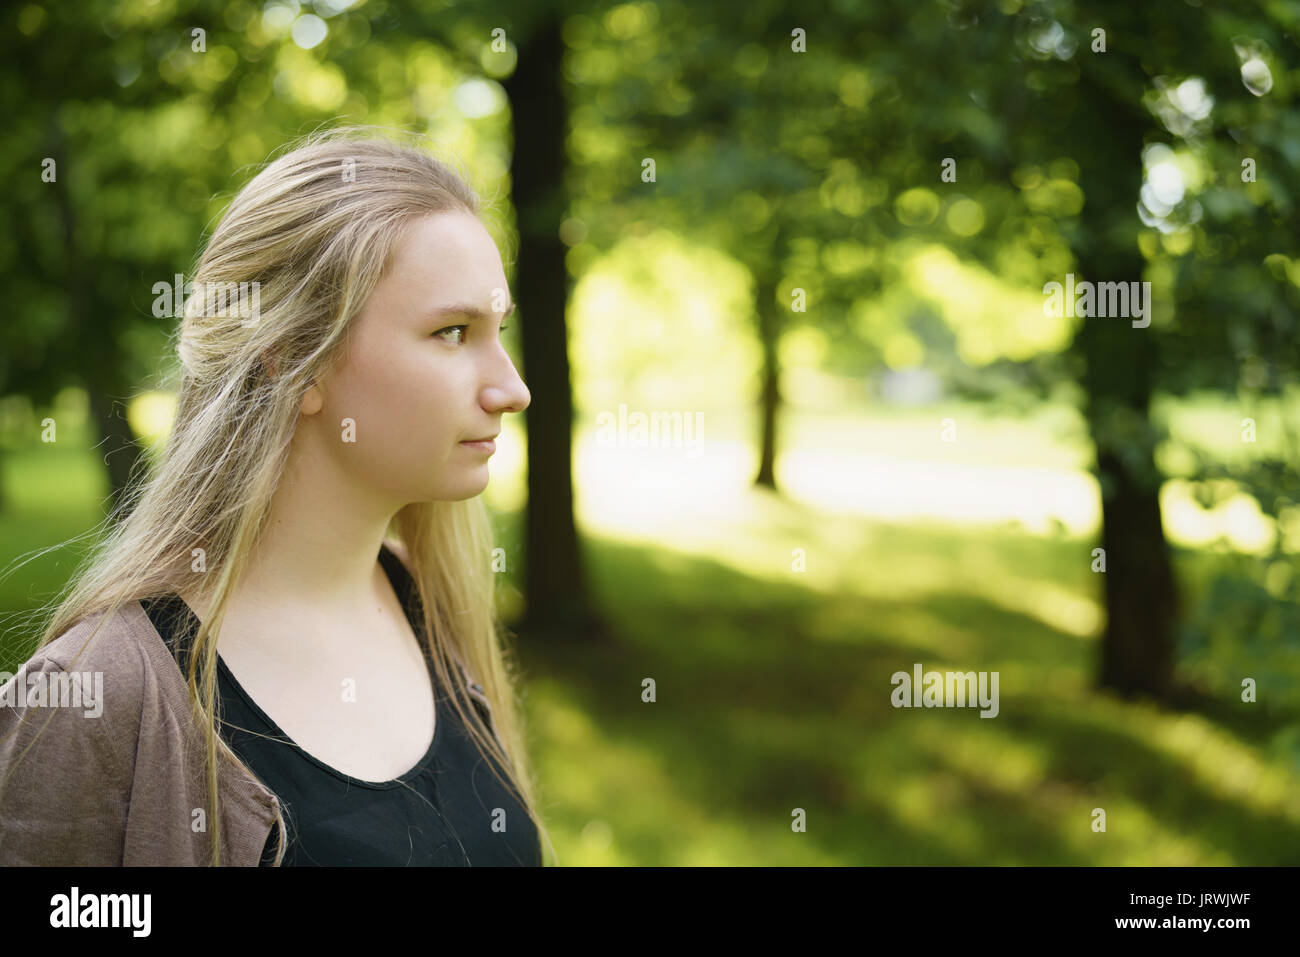 Teen ragazza ritratto nel parco verde nella soleggiata giornata estiva Foto Stock